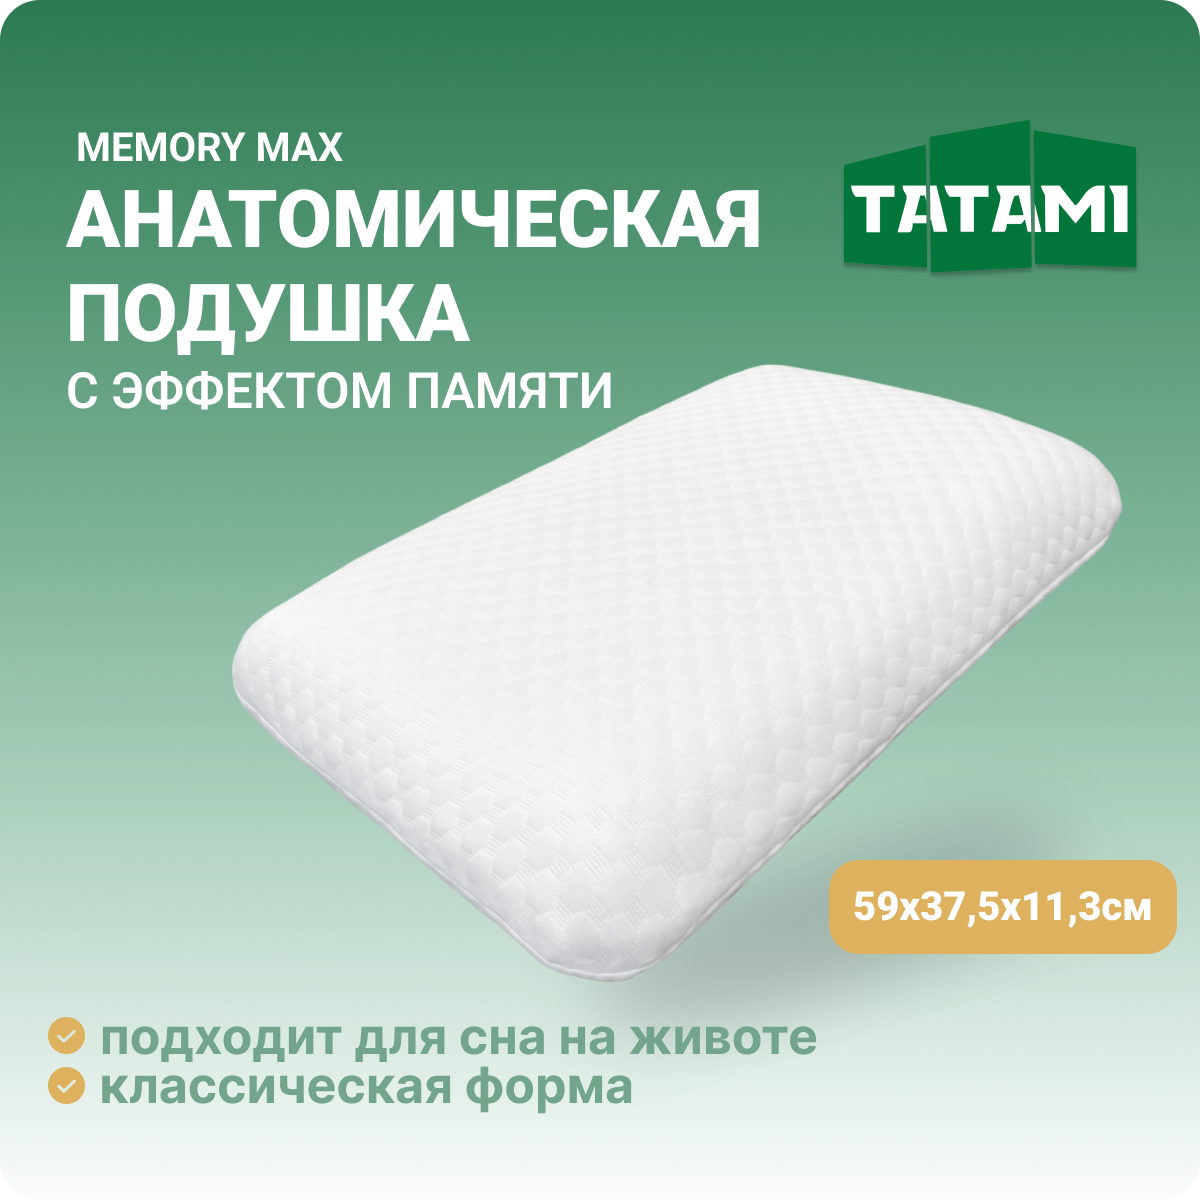 Ортопедическая подушка с эффектом памяти Tatami Memory Max 37.5x59 см, высота 11.3 см